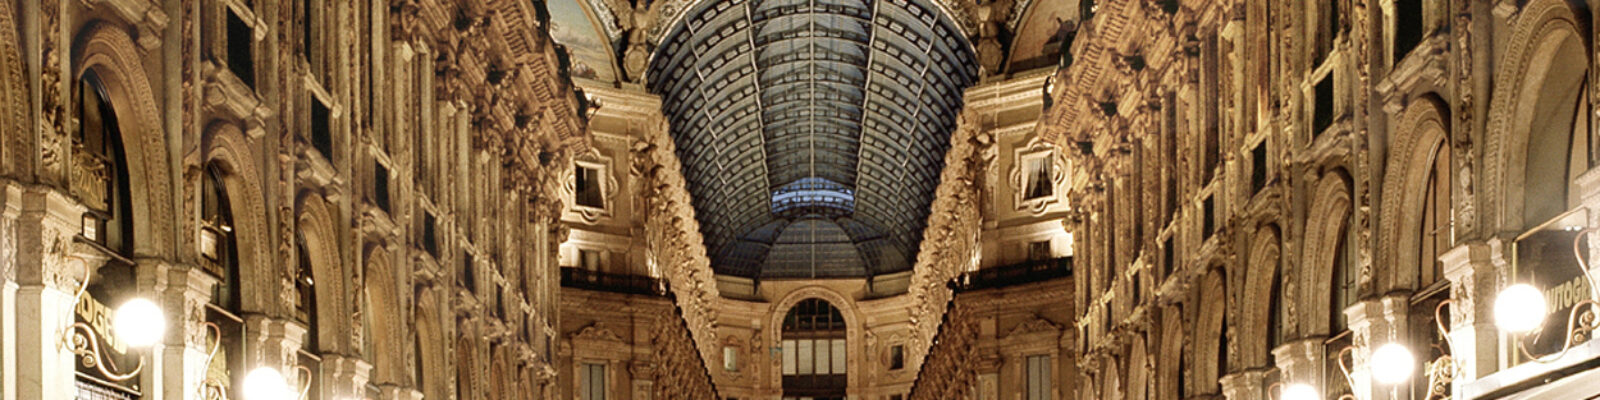 Vista centrale della Galleria Vittorio Emanuele illuminata